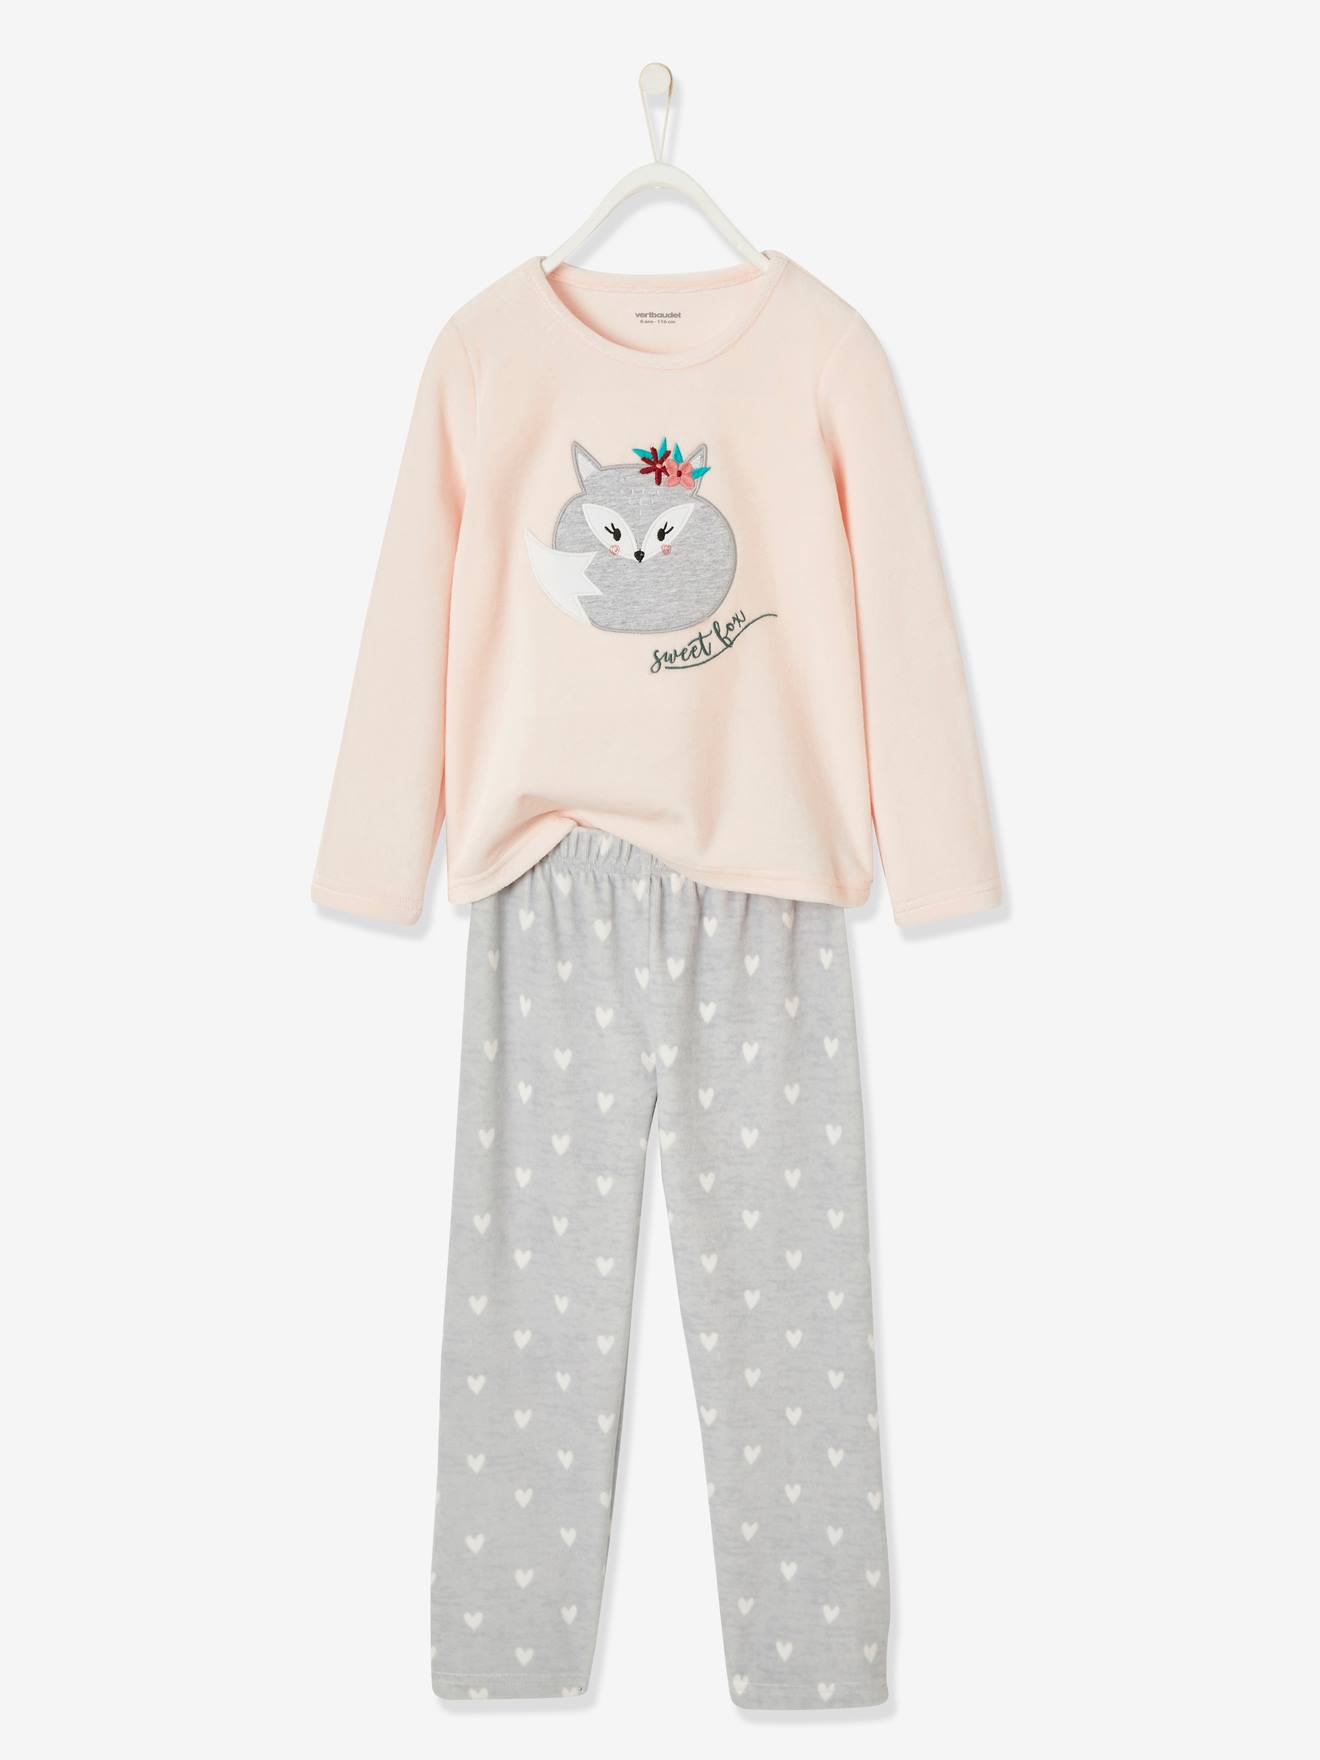 NEU Mädchen Schlafanzug Pyjama American Style Homewear Nachtwäsche 116 128 weiß 